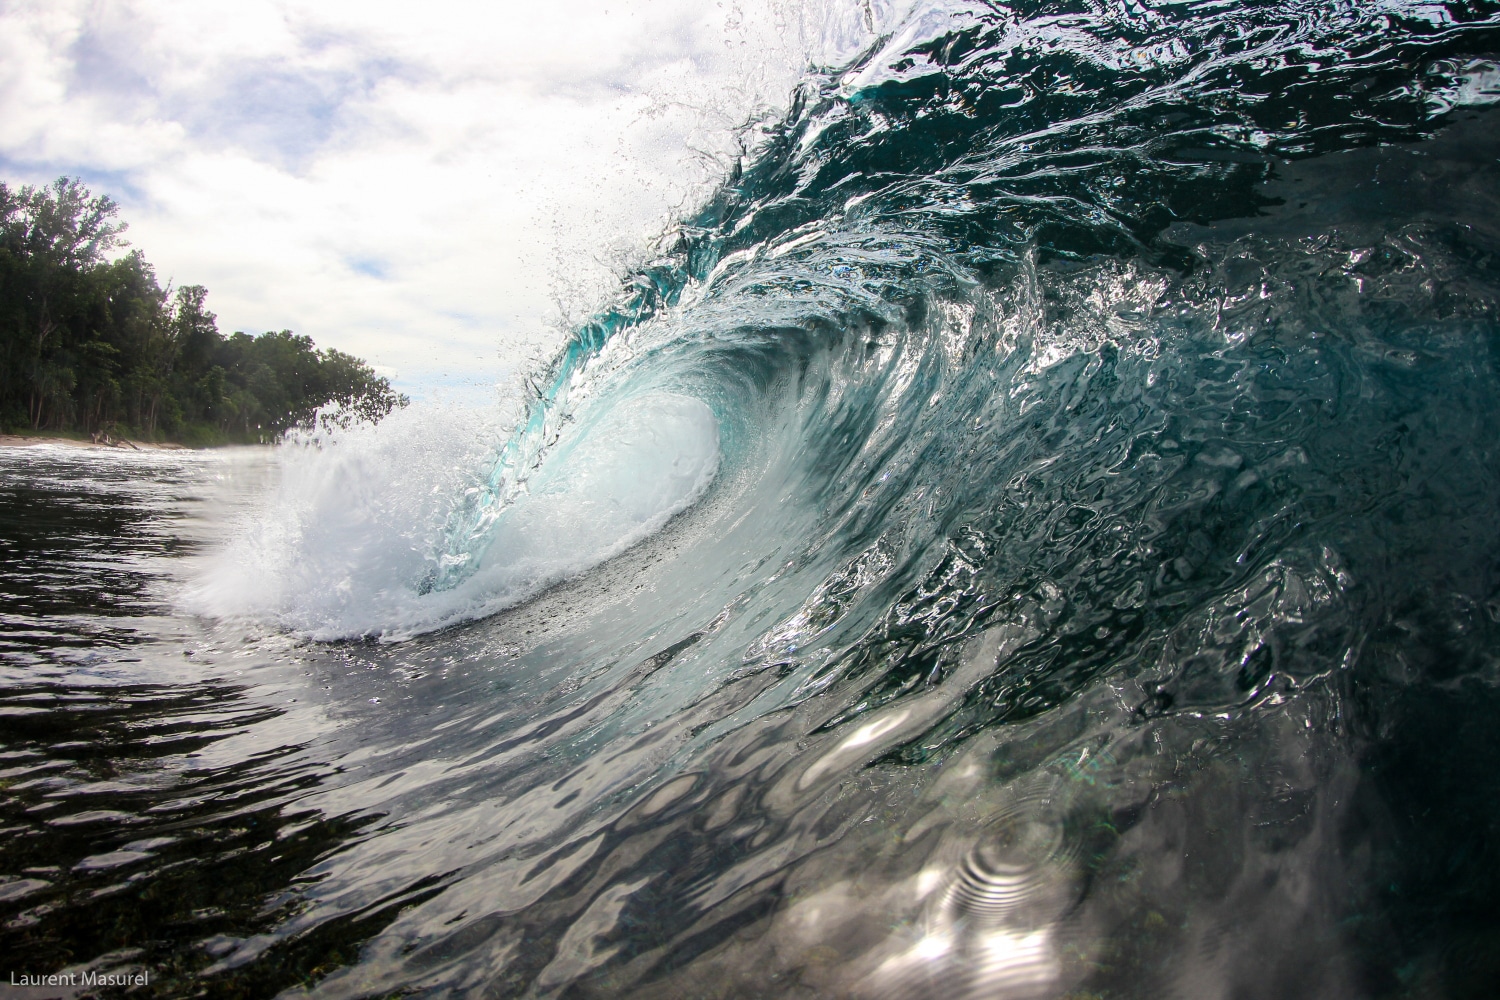 surf charter croisière banyak indonésie